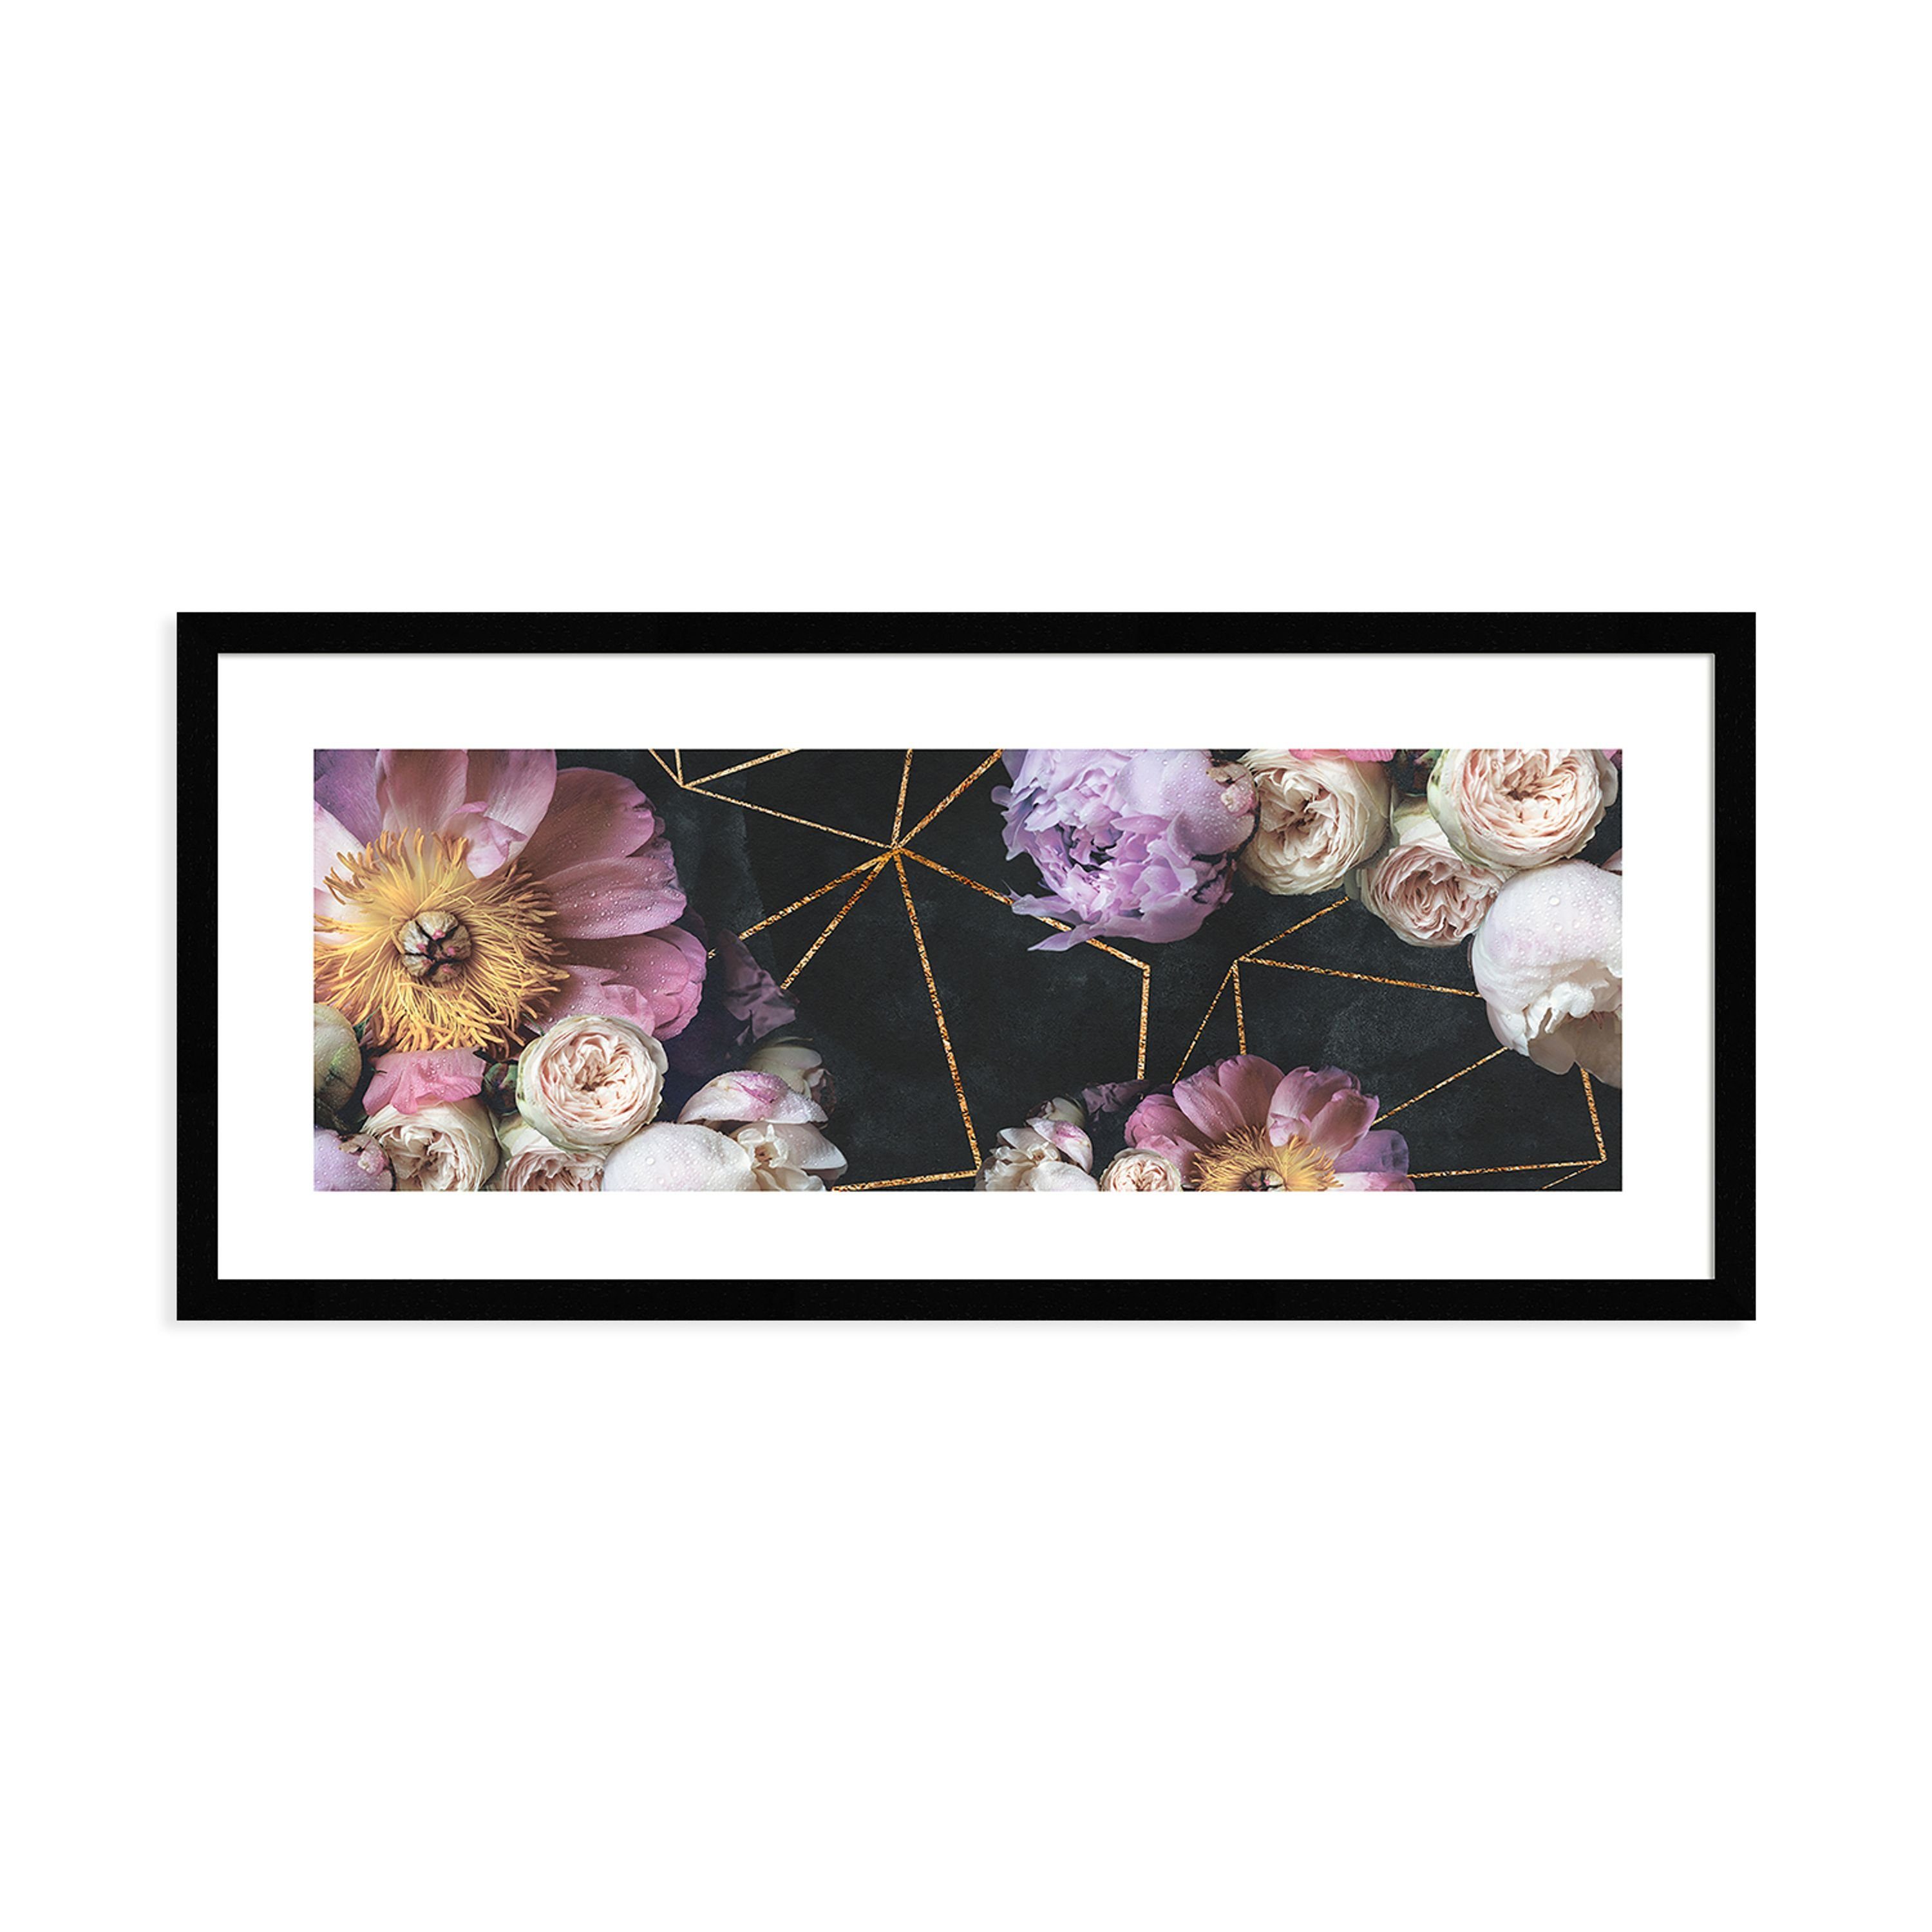 mit 71x30cm artissimo gerahmt Bild schwarz Rahmen Bkumen Bouquet mit länglich Bild und Blüten: Design-Poster Vintage lila, Rahmen